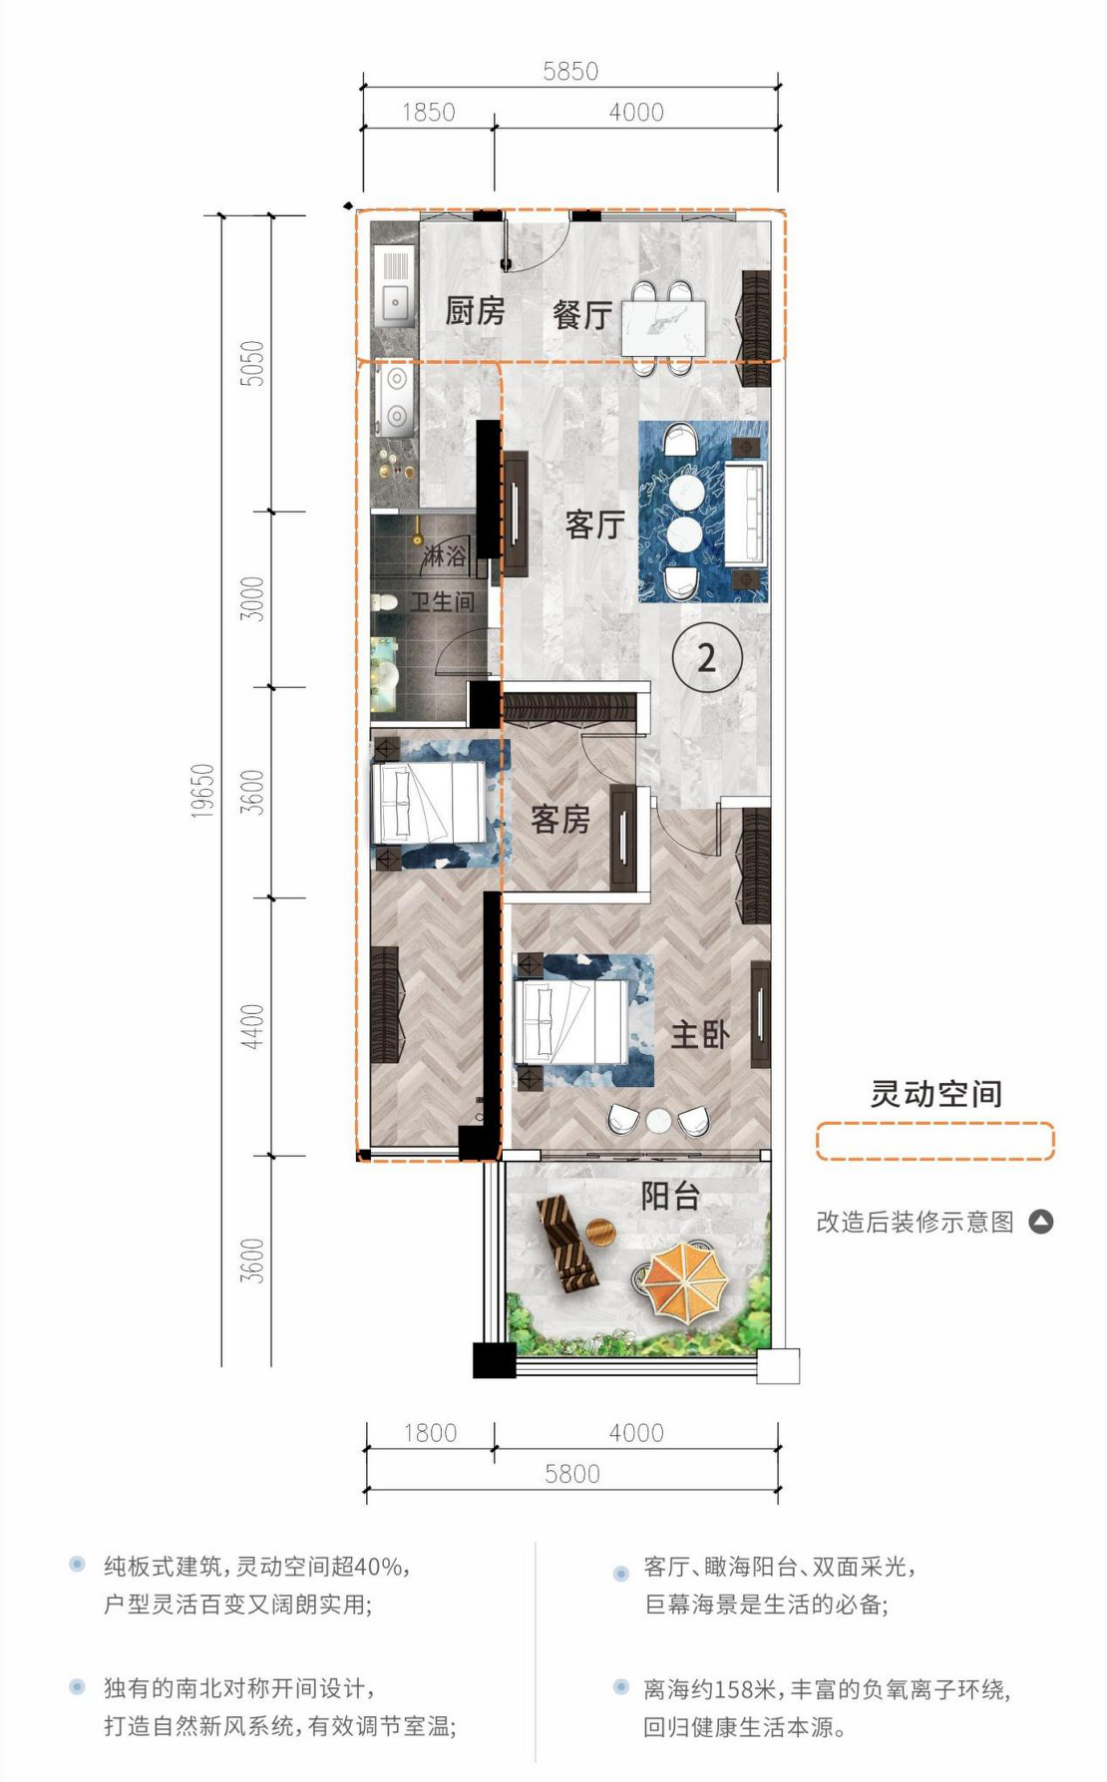 和居壹海江山 高层 02/09户型 建筑面积75㎡ 2房2厅1卫（使用面积110㎡）